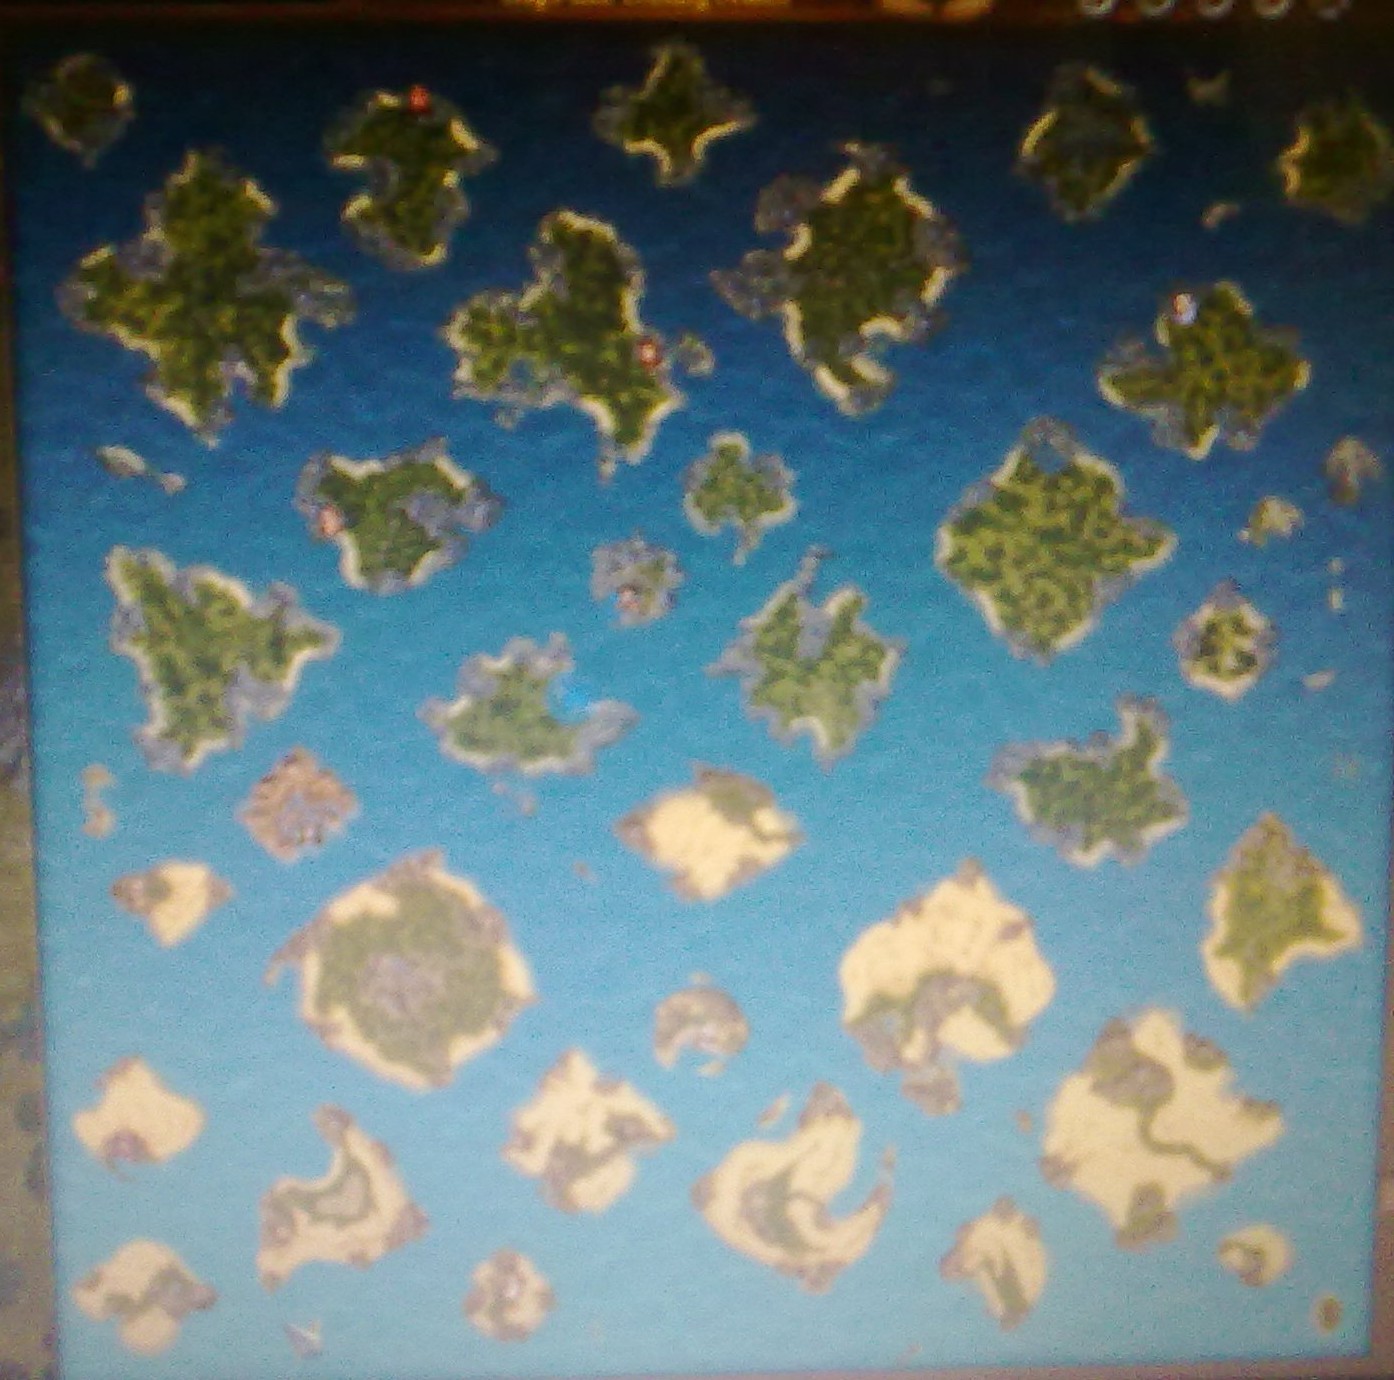 anno 1404 maps